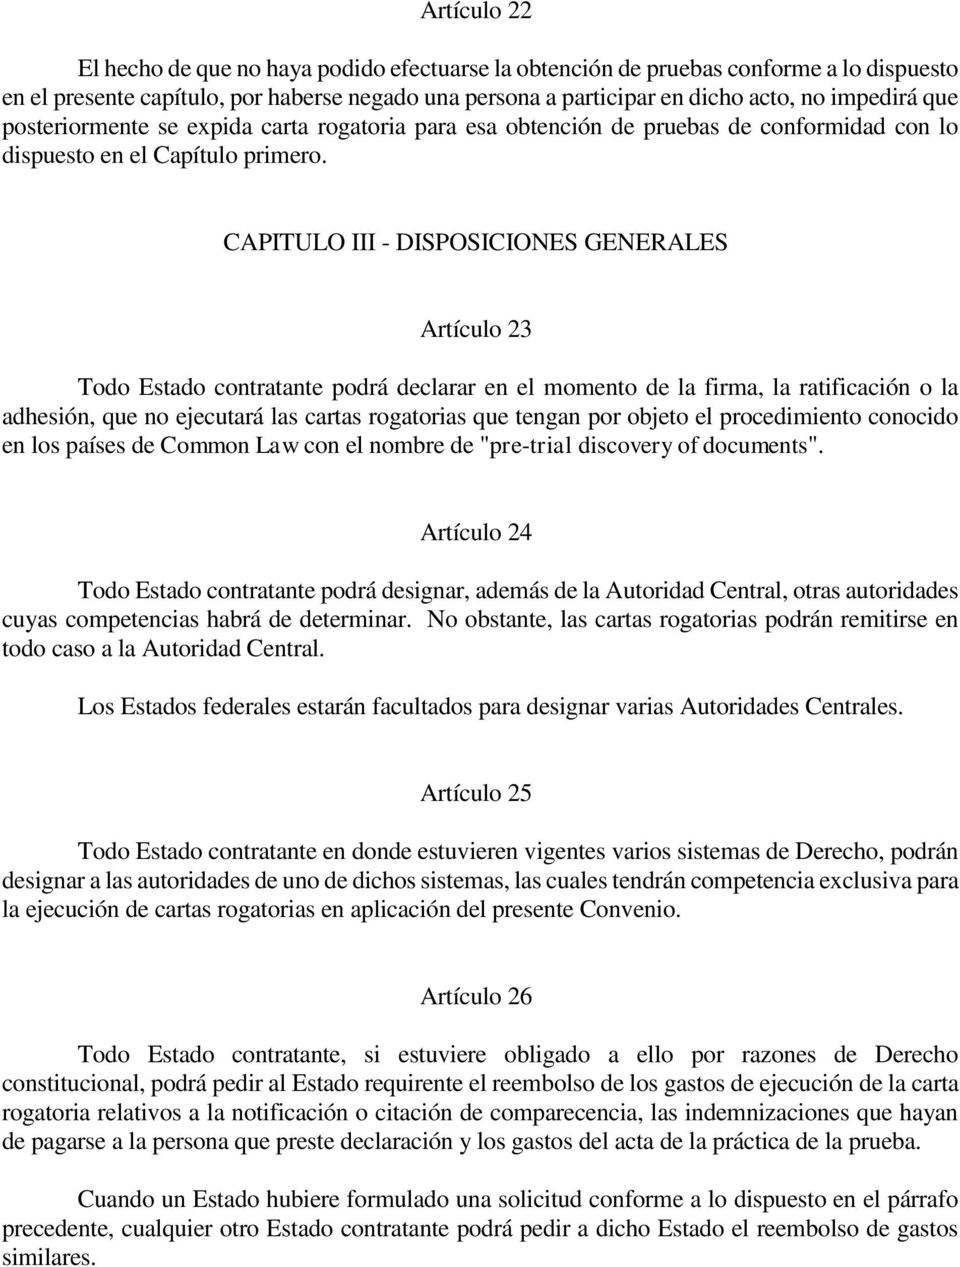 CAPITULO III - DISPOSICIONES GENERALES Artículo 23 Todo Estado contratante podrá declarar en el momento de la firma, la ratificación o la adhesión, que no ejecutará las cartas rogatorias que tengan